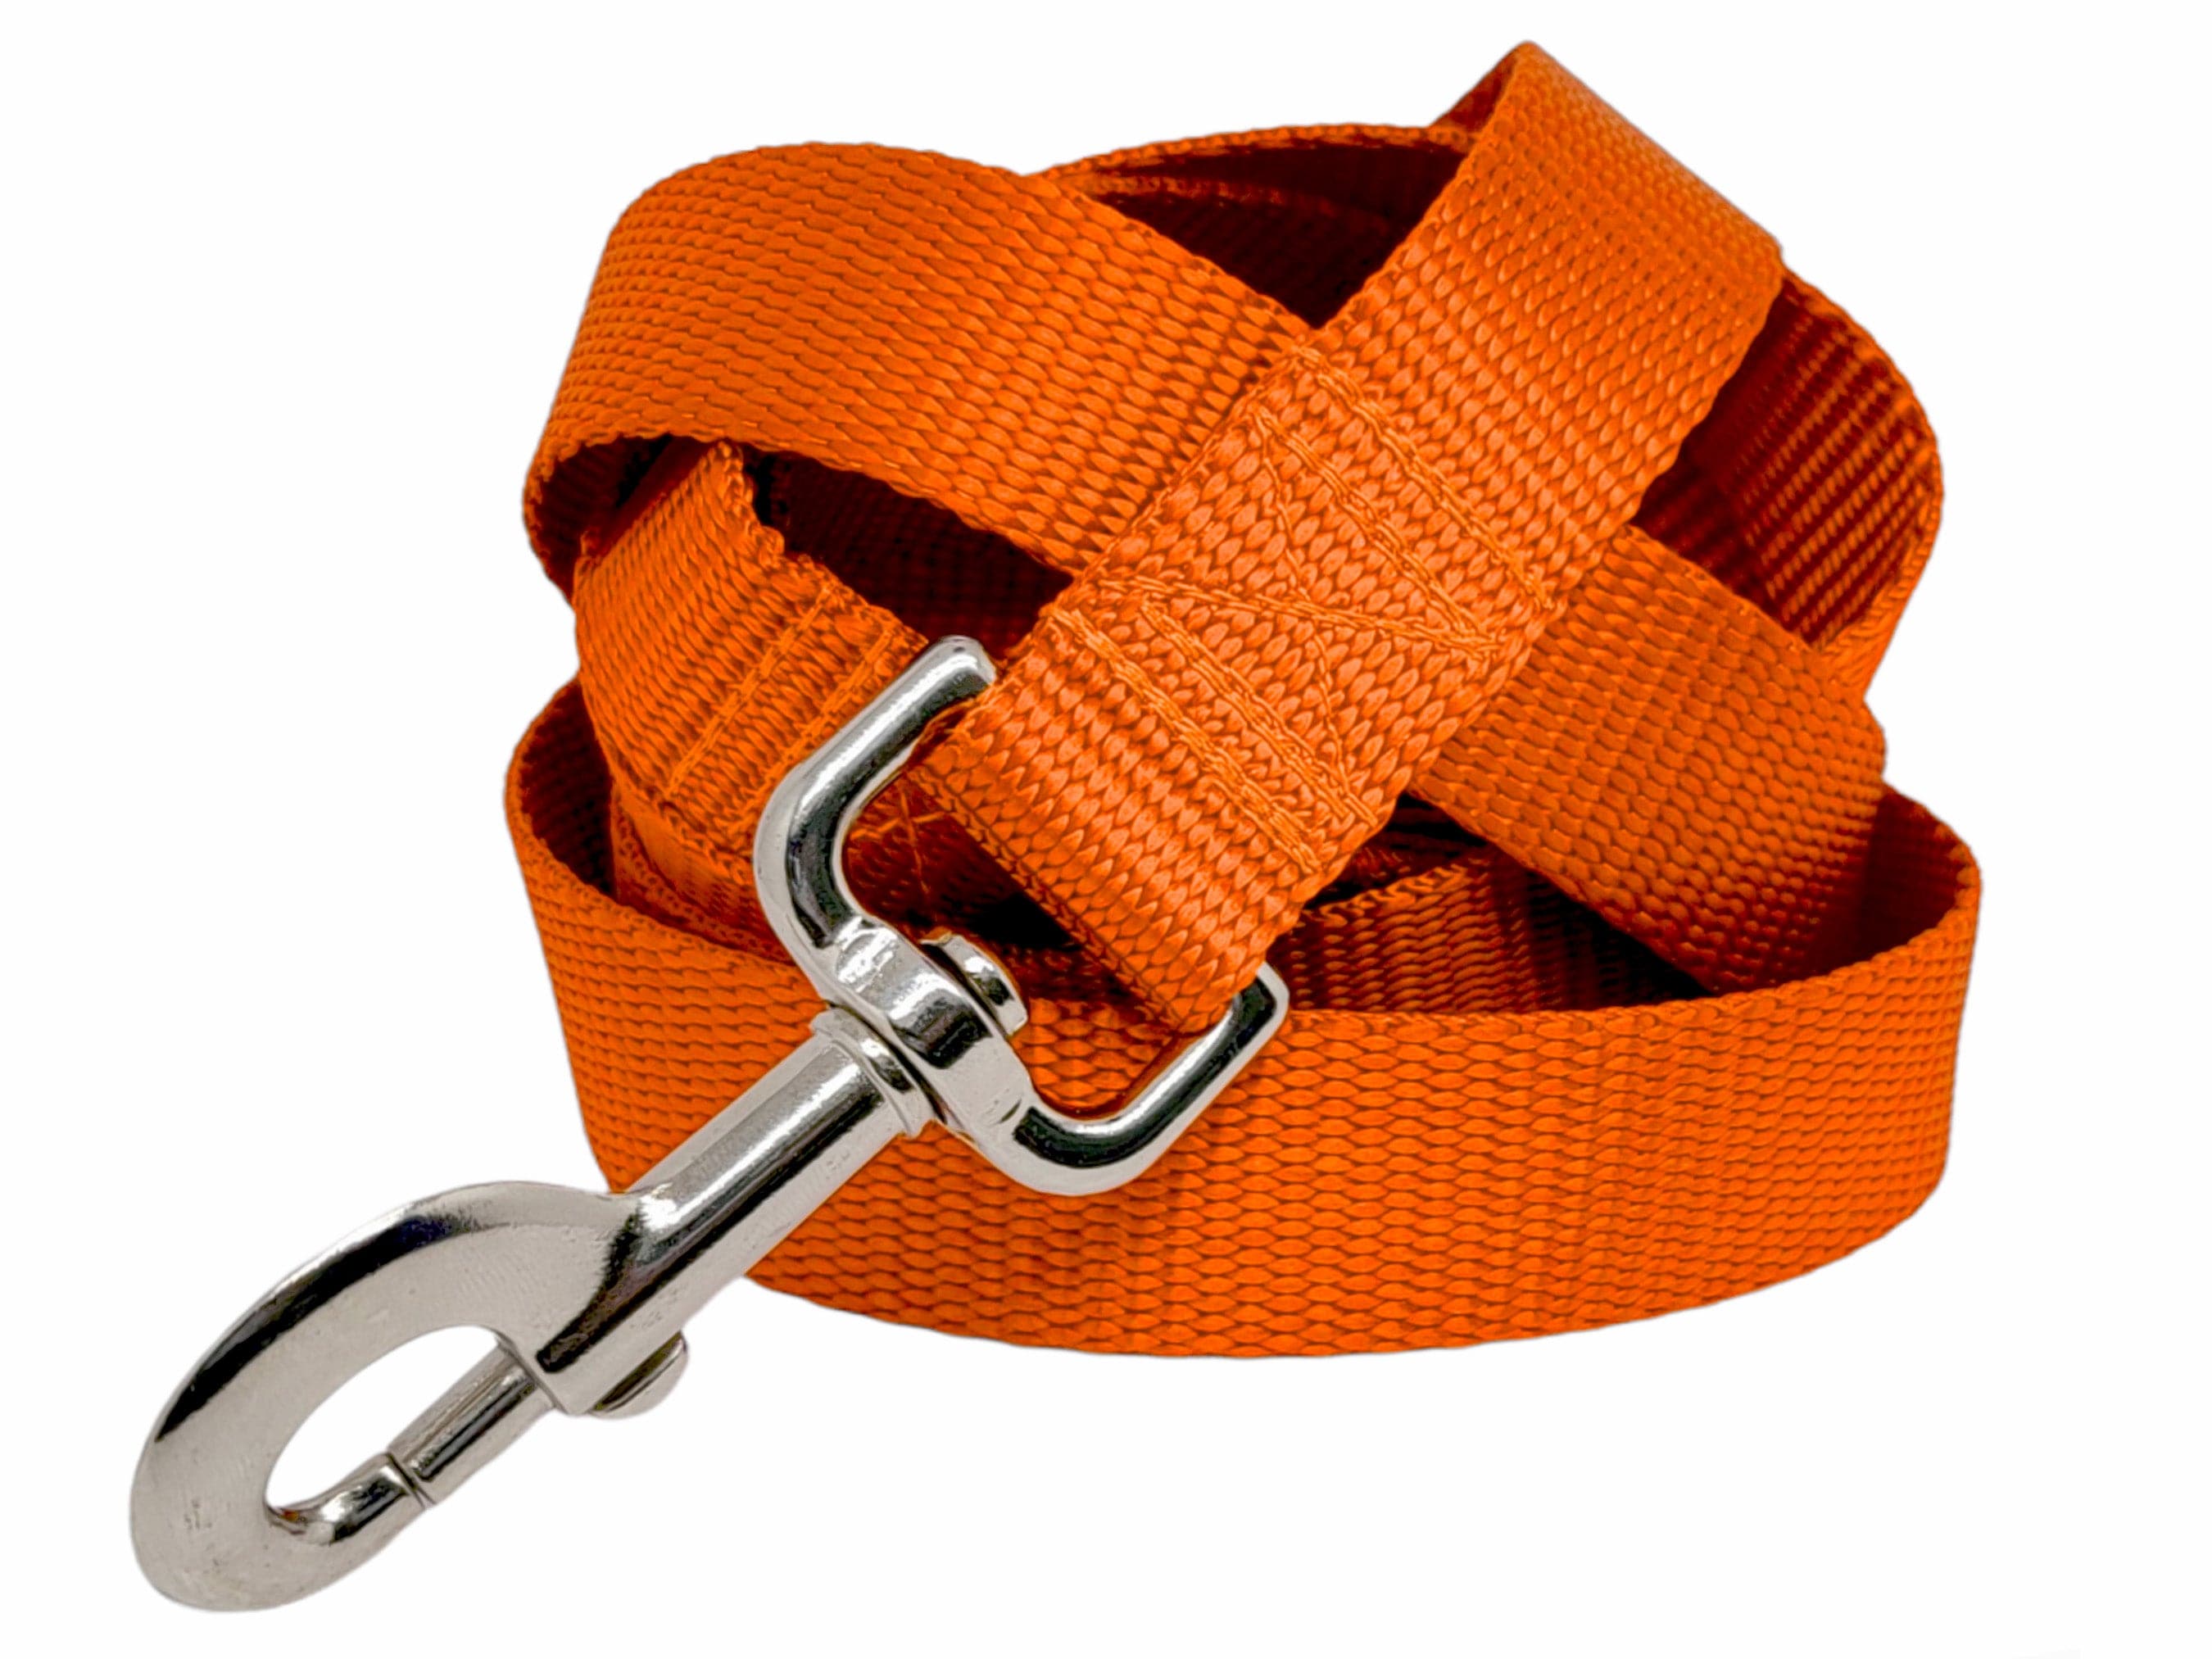 The Hound Haberdashery Leash Orange Nylon Dog Leash